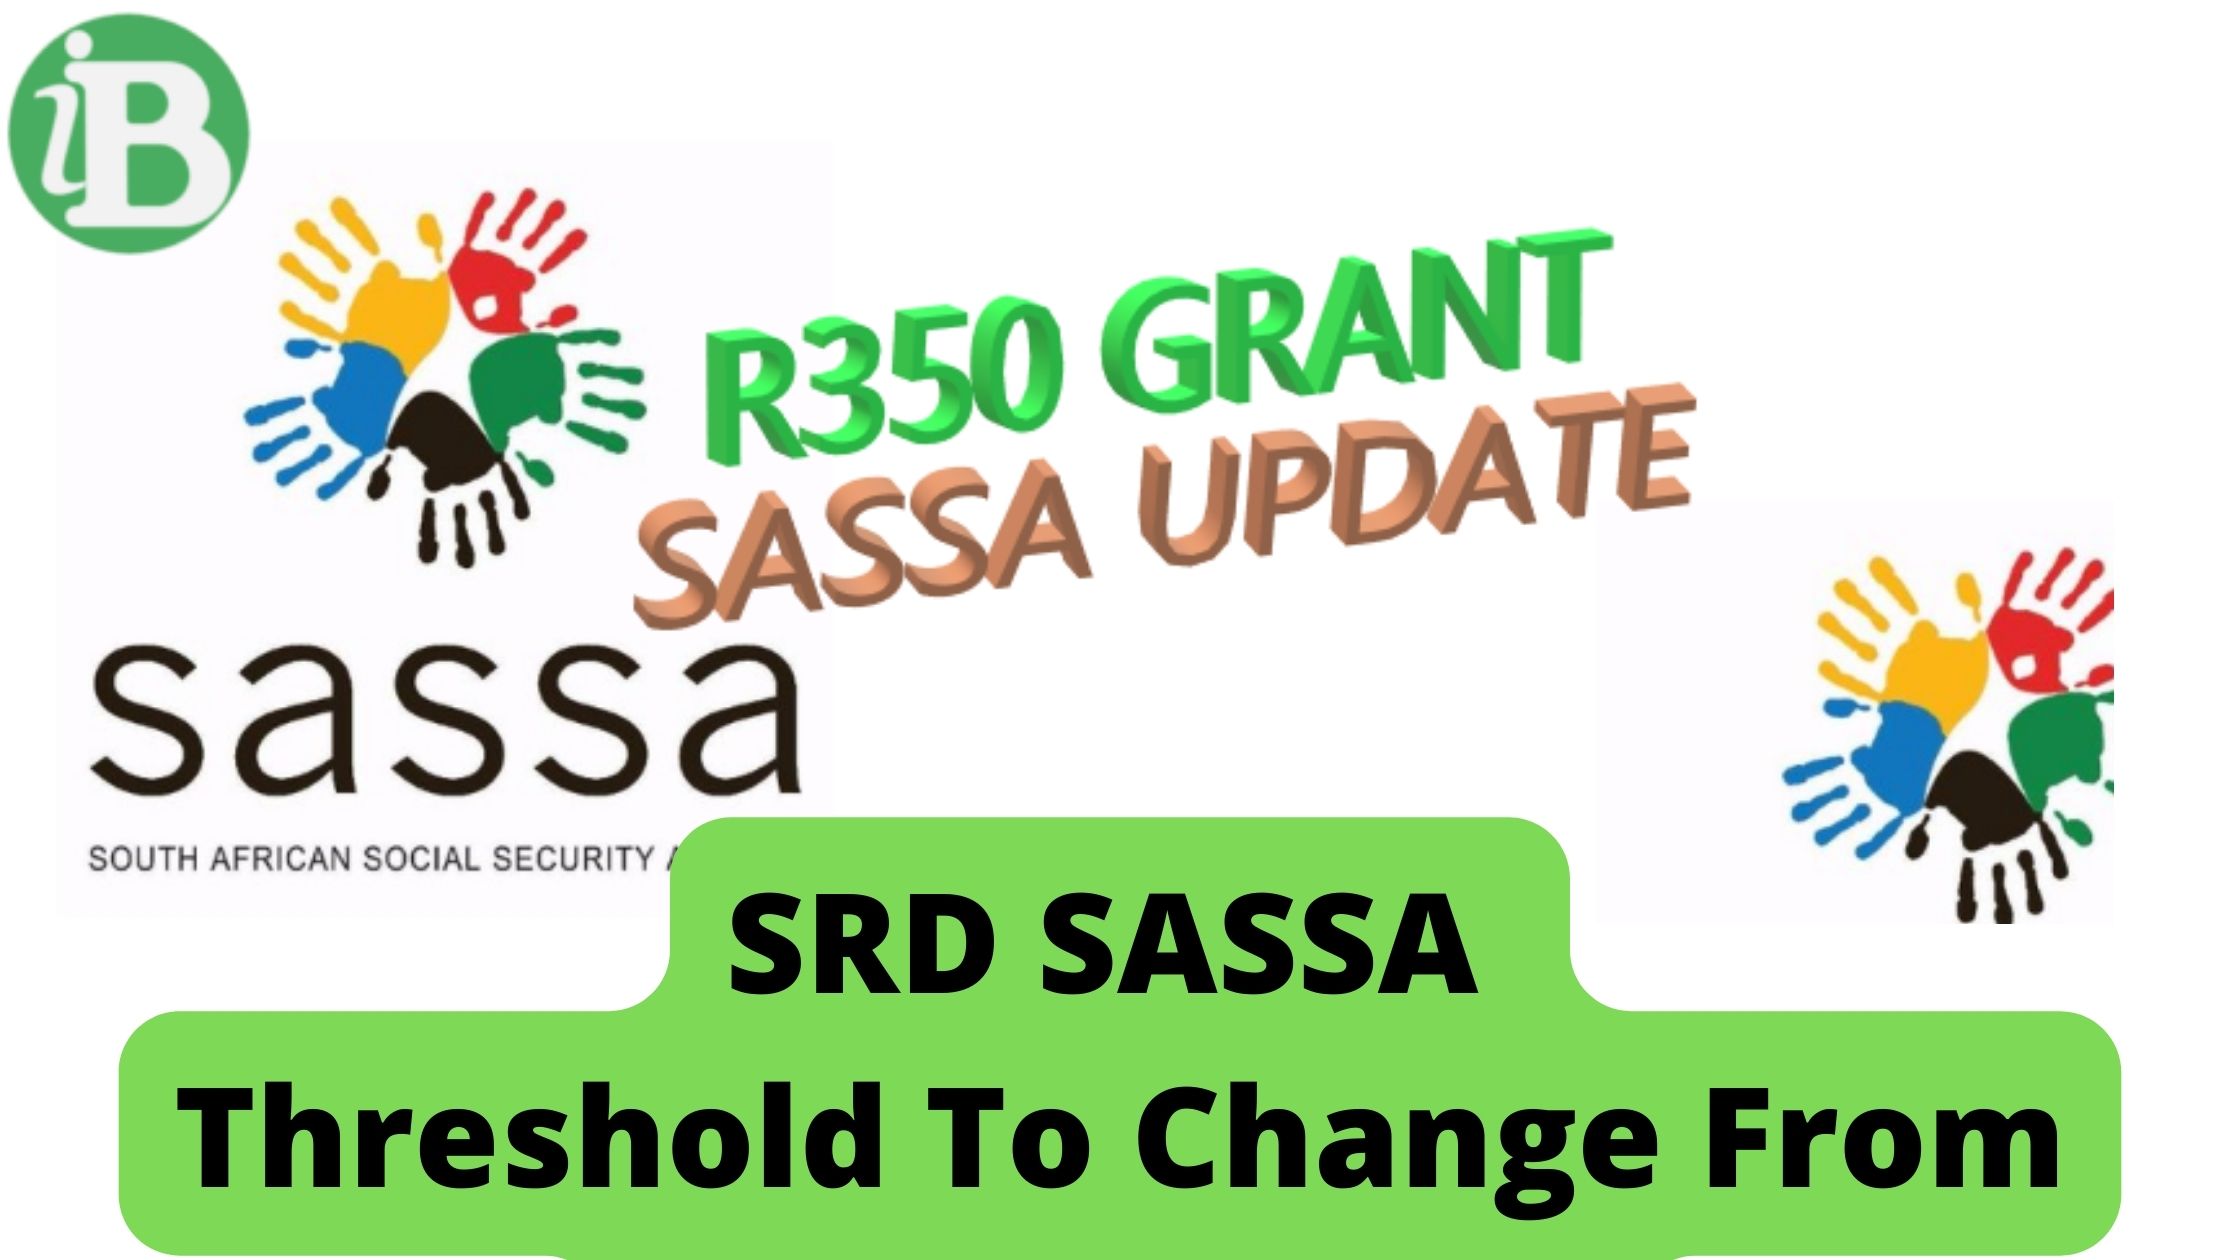 SRD SASSA Threshold To Change From R350 To R624